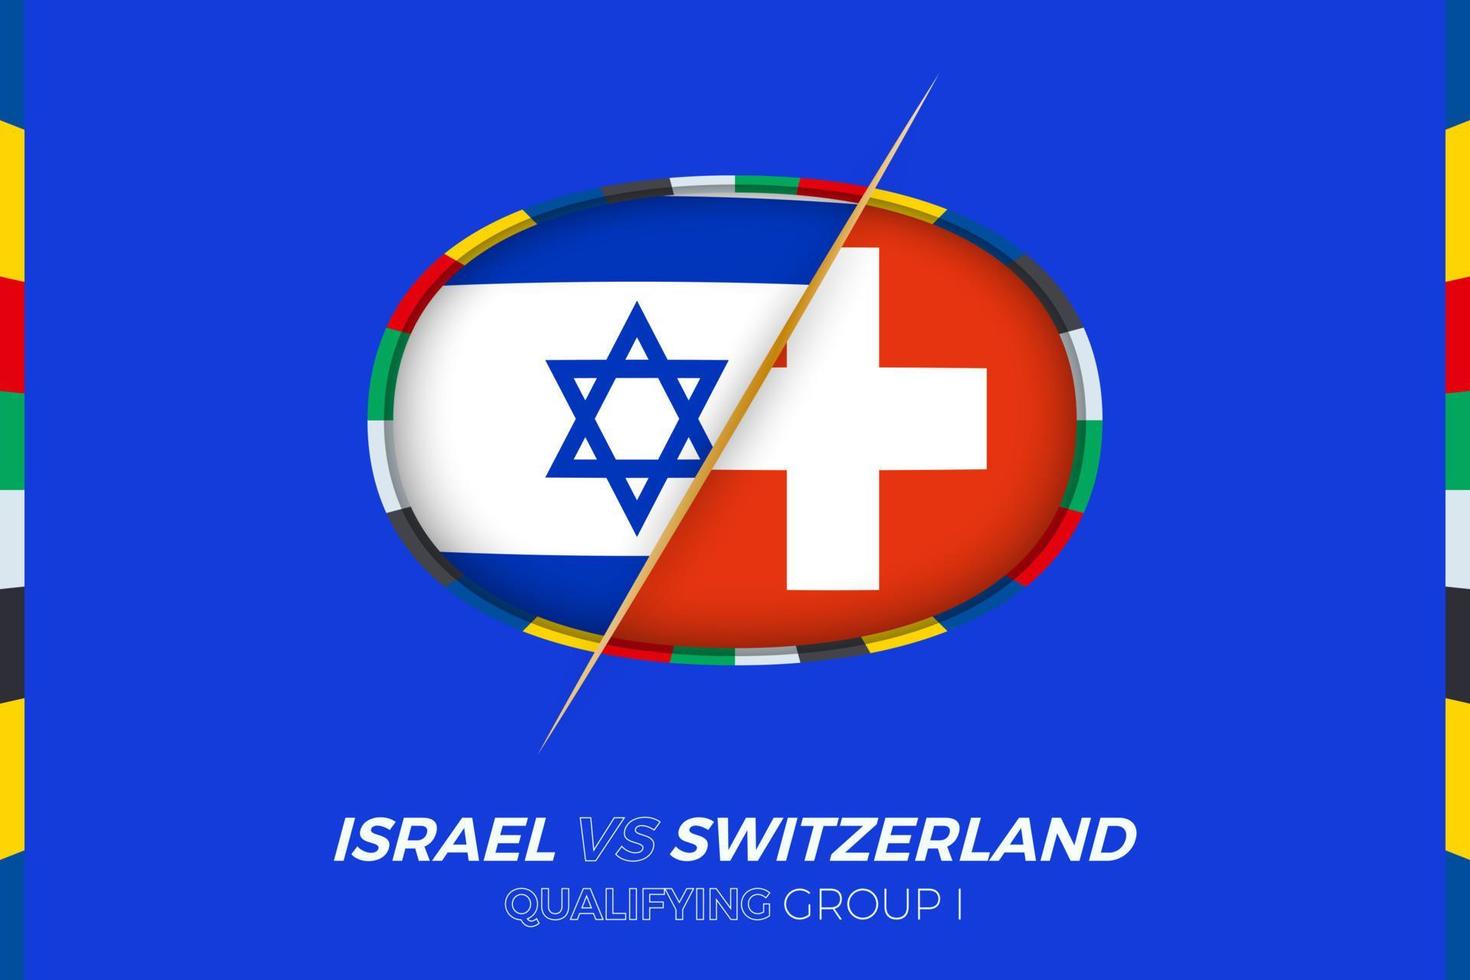 Israel mot schweiz ikon för europeisk fotboll turnering kompetens, grupp i. vektor